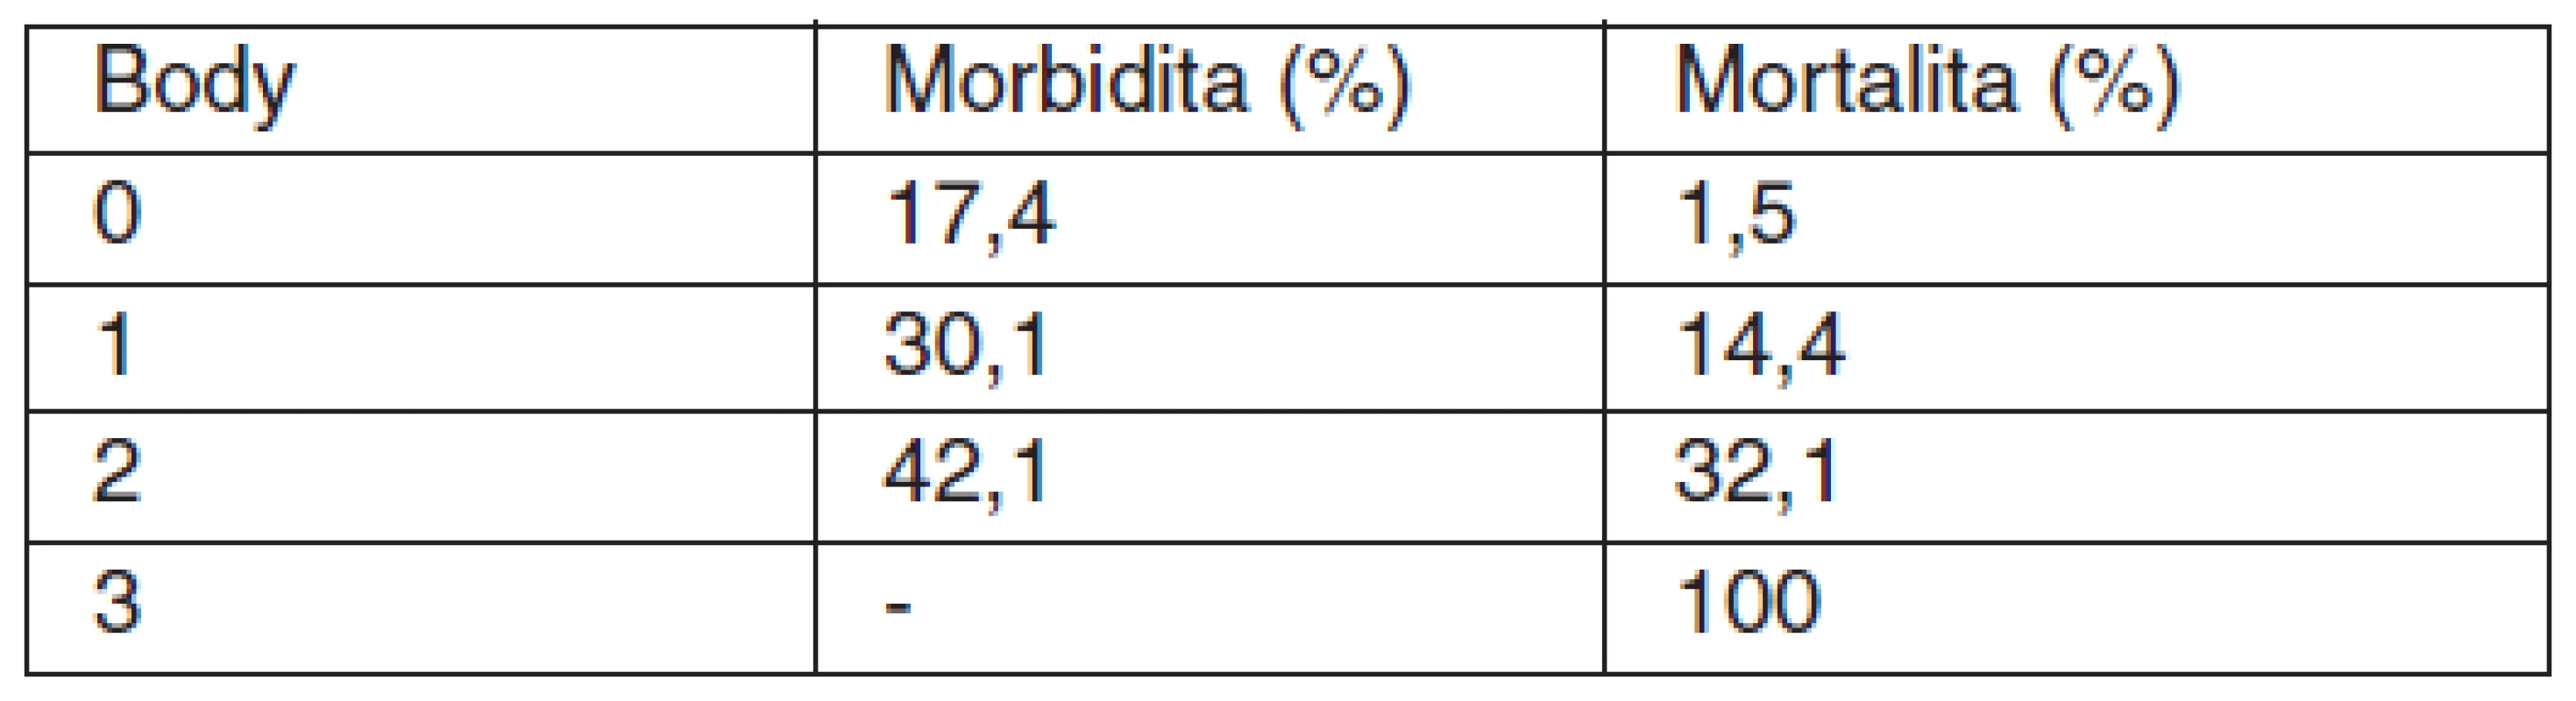 Skóre pro morbiditu a mortalitu u perforovaného peptického vredu podle Boey [13]